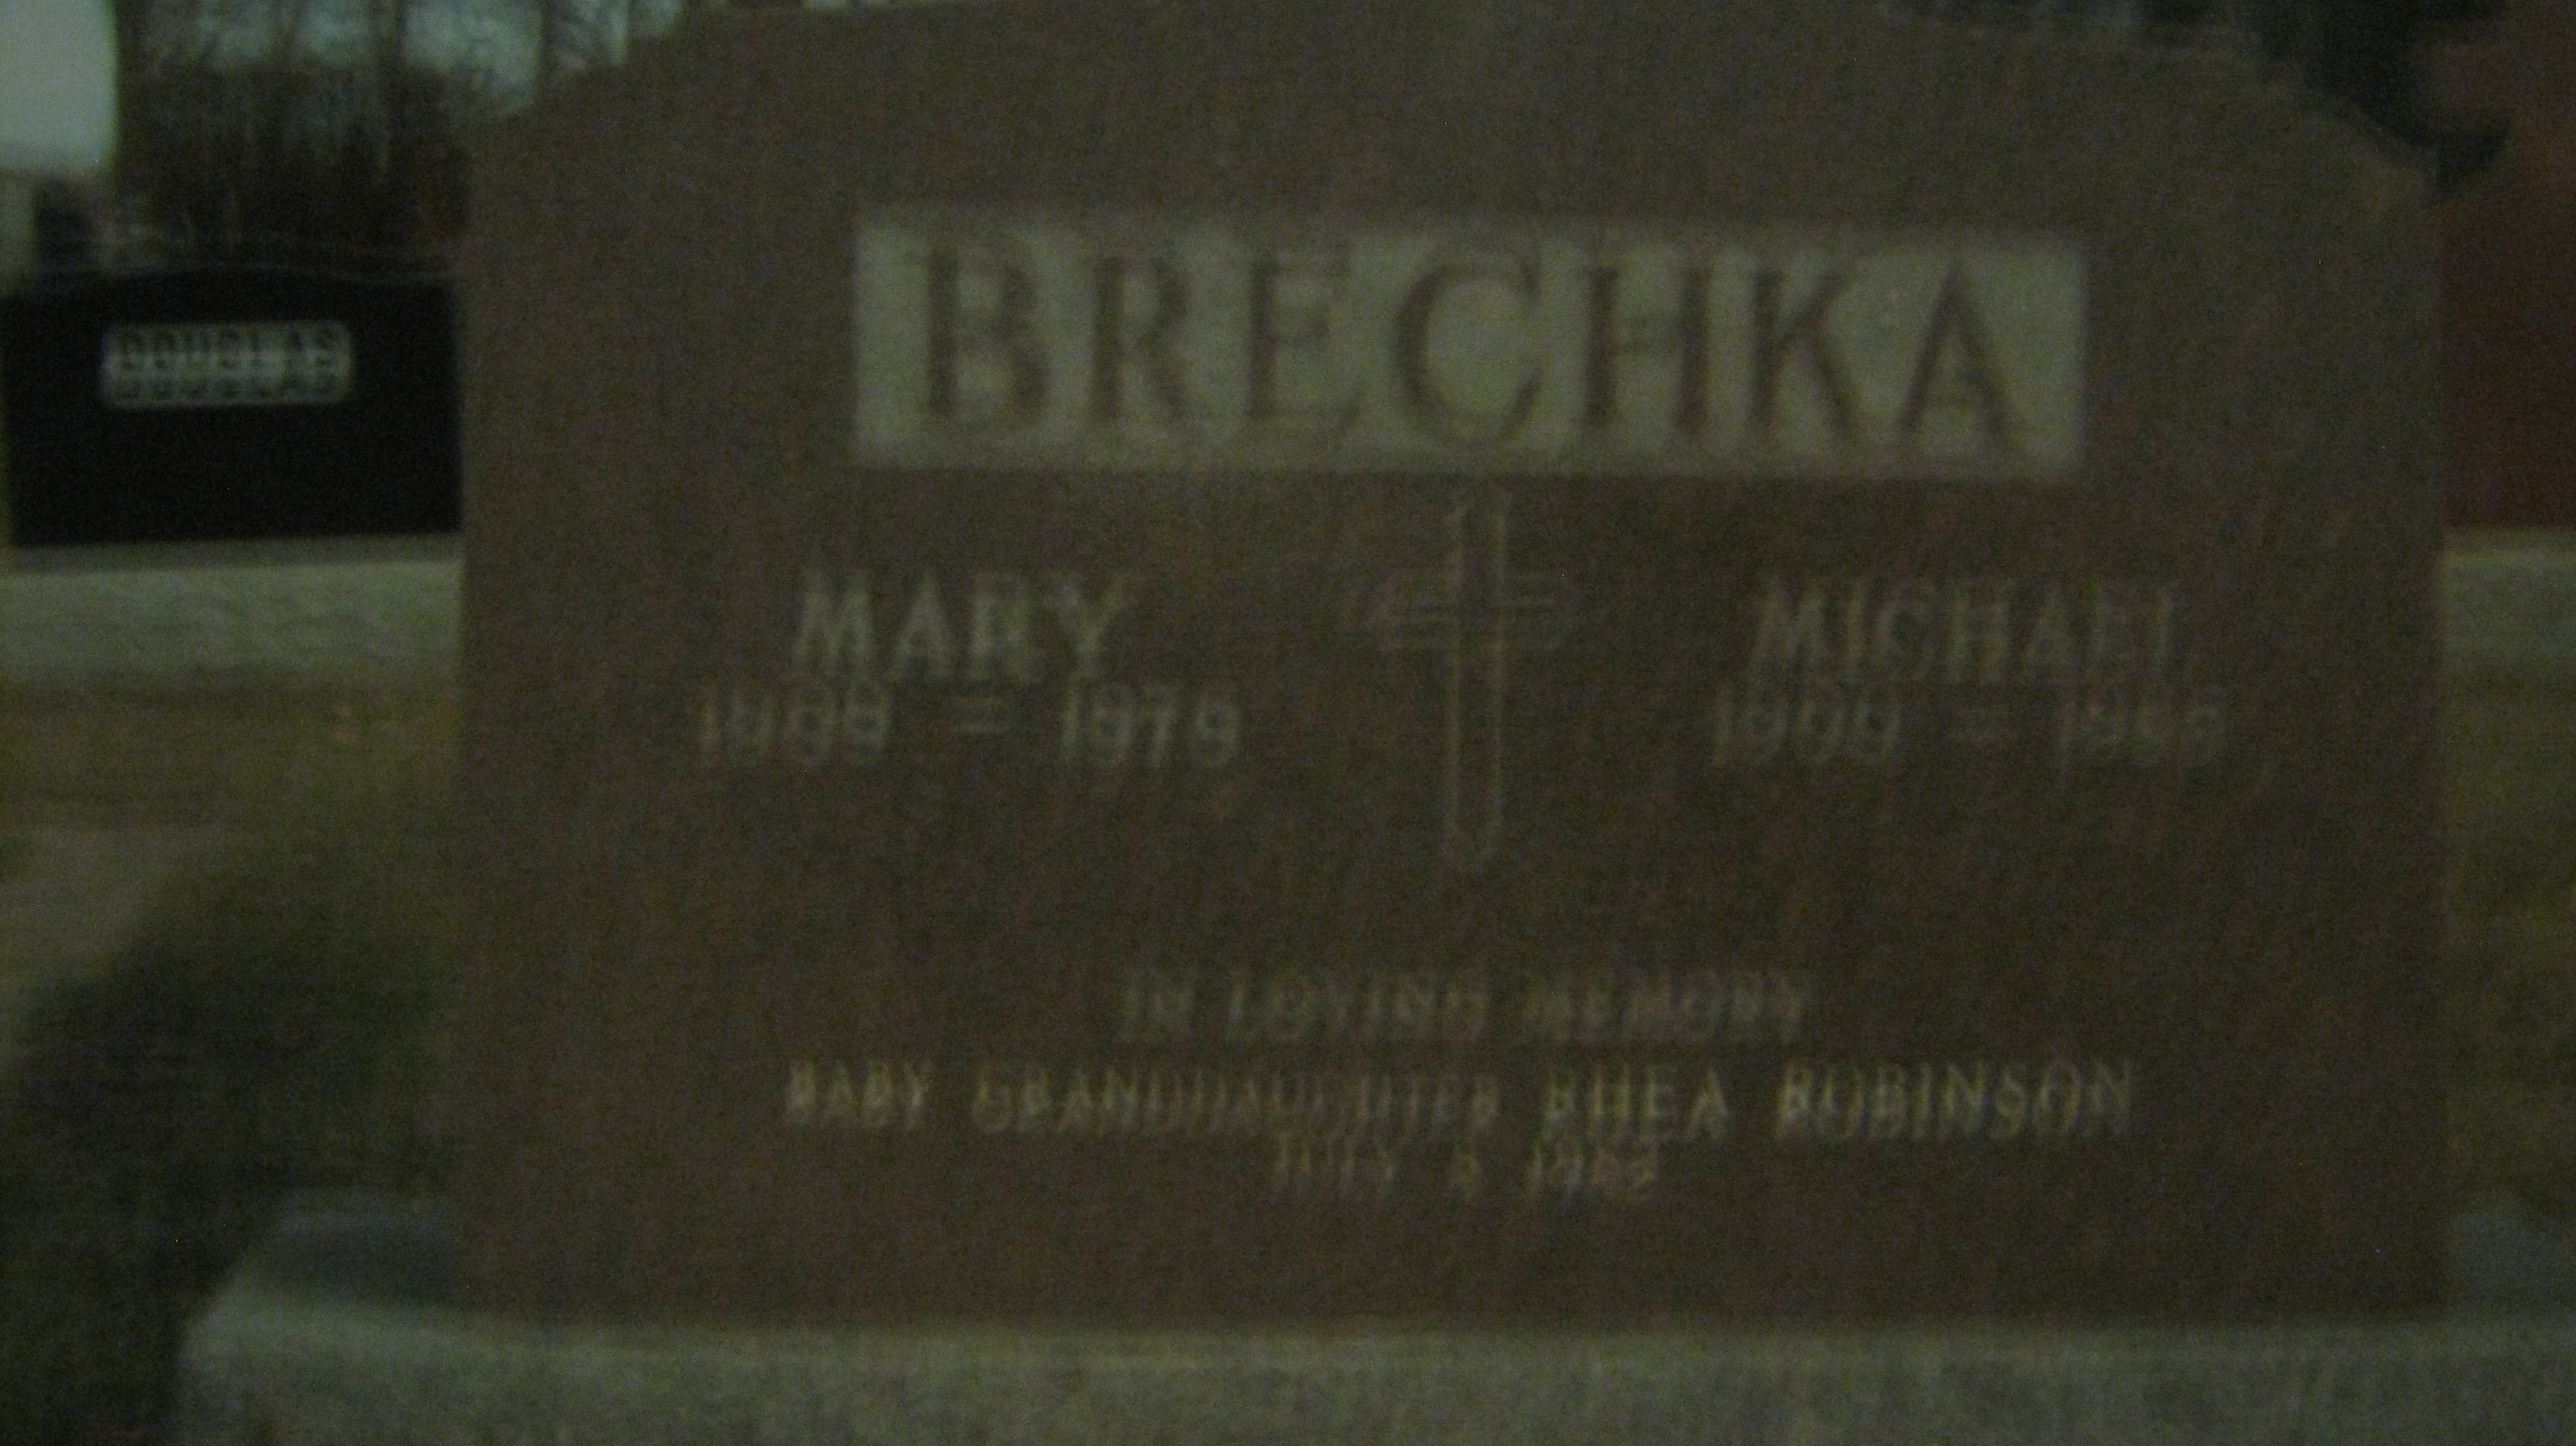 Mary & Michael Brechka headstone